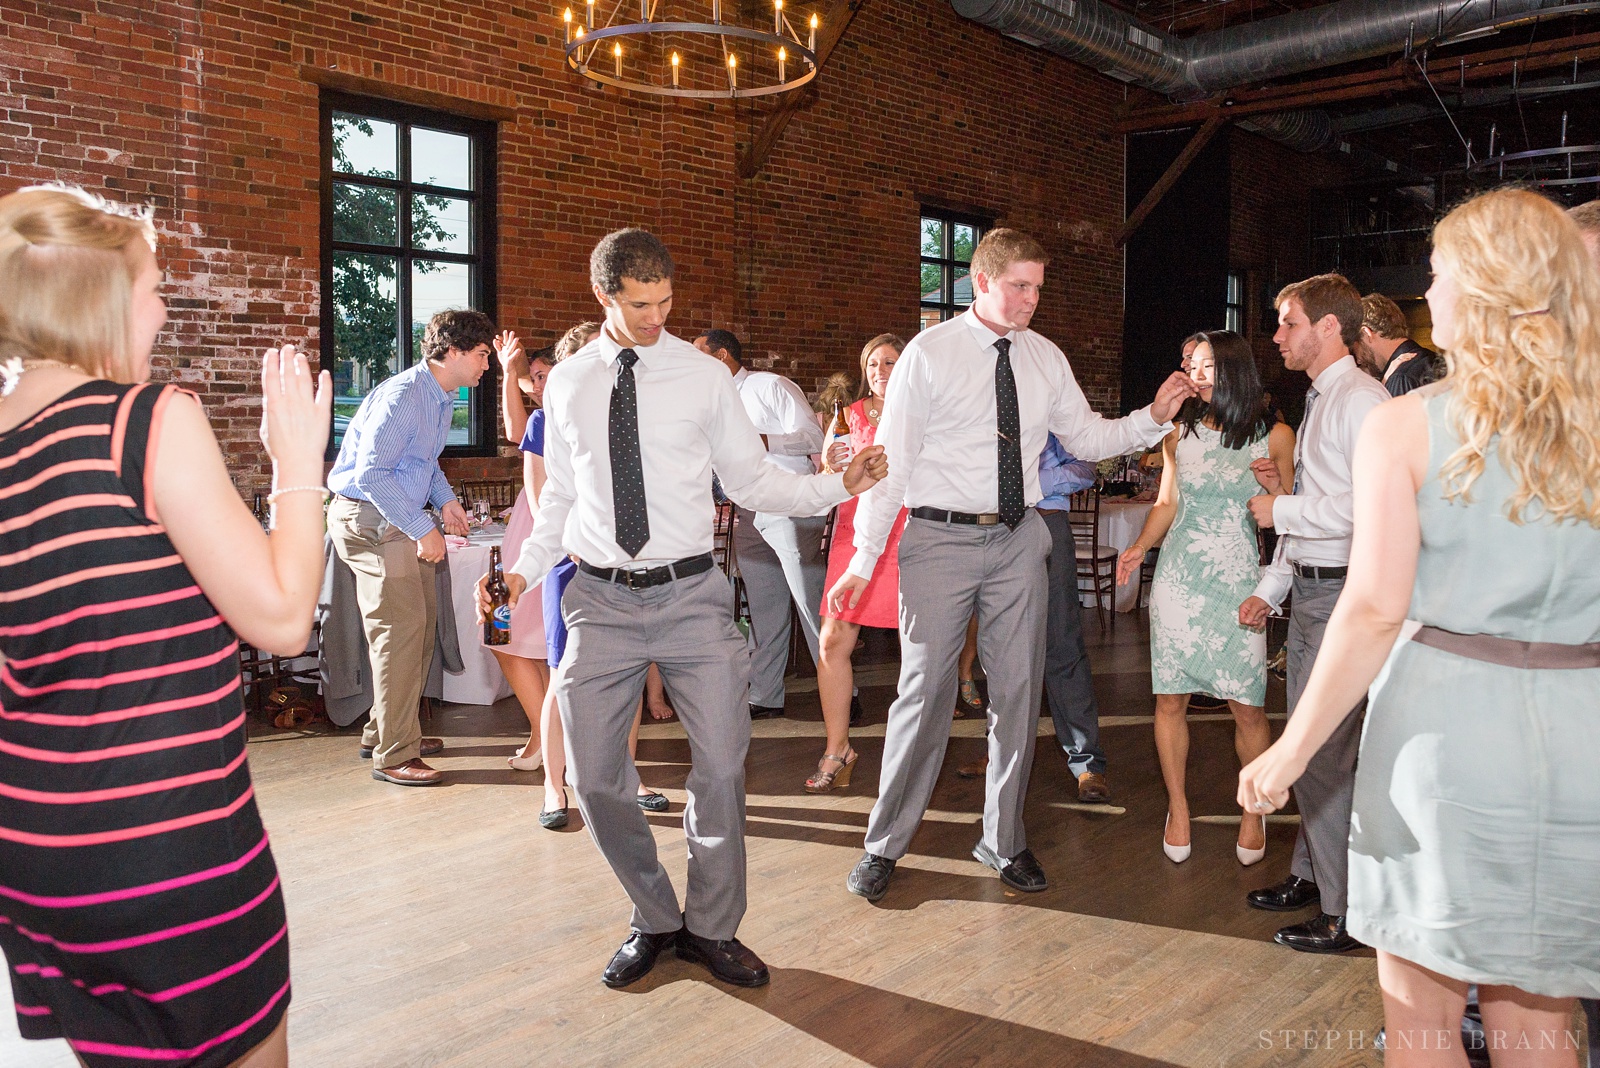 fun-dances-at-a-wedding